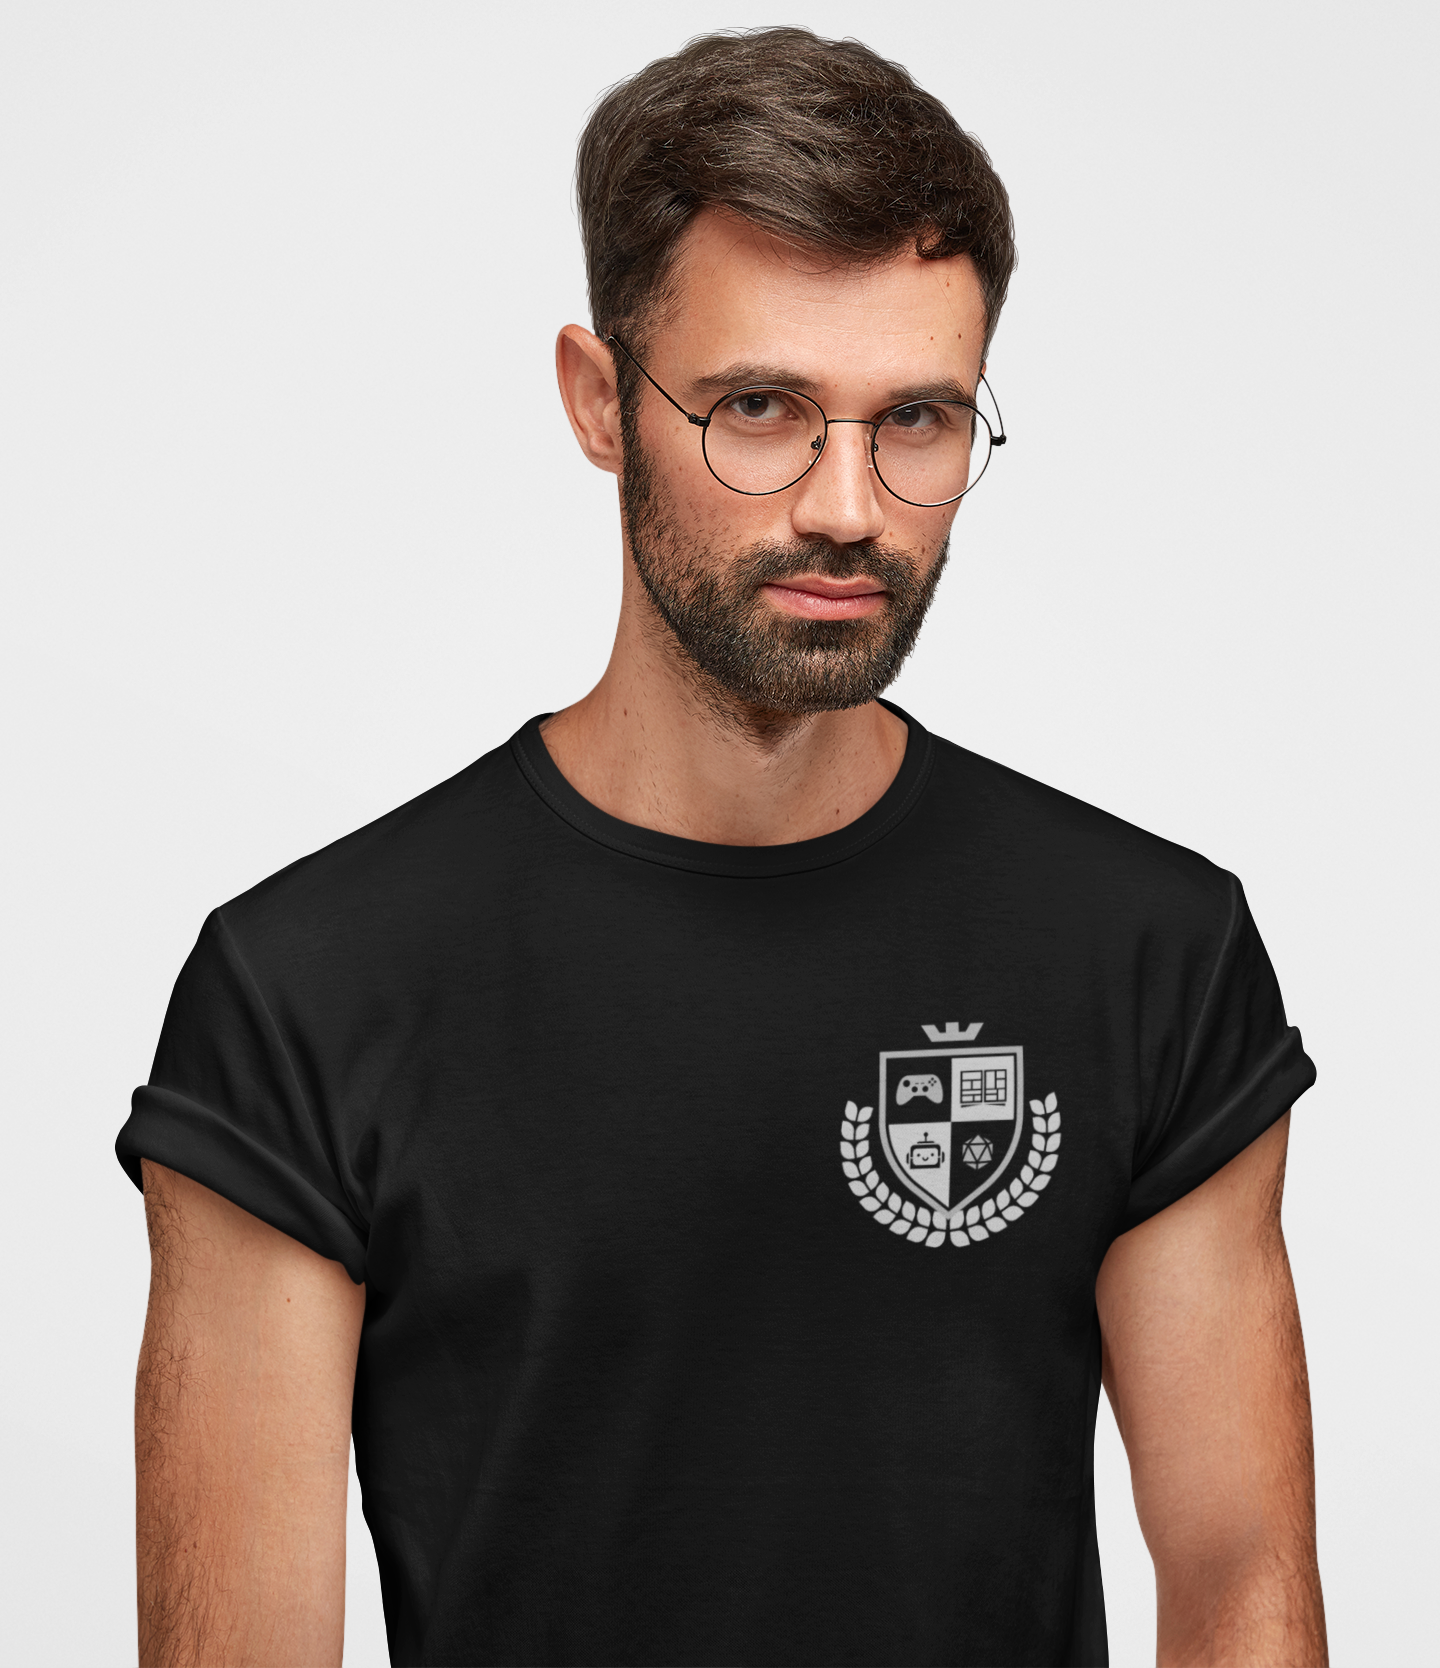 Pocket Design Black Round Neck T-Shirt for Men